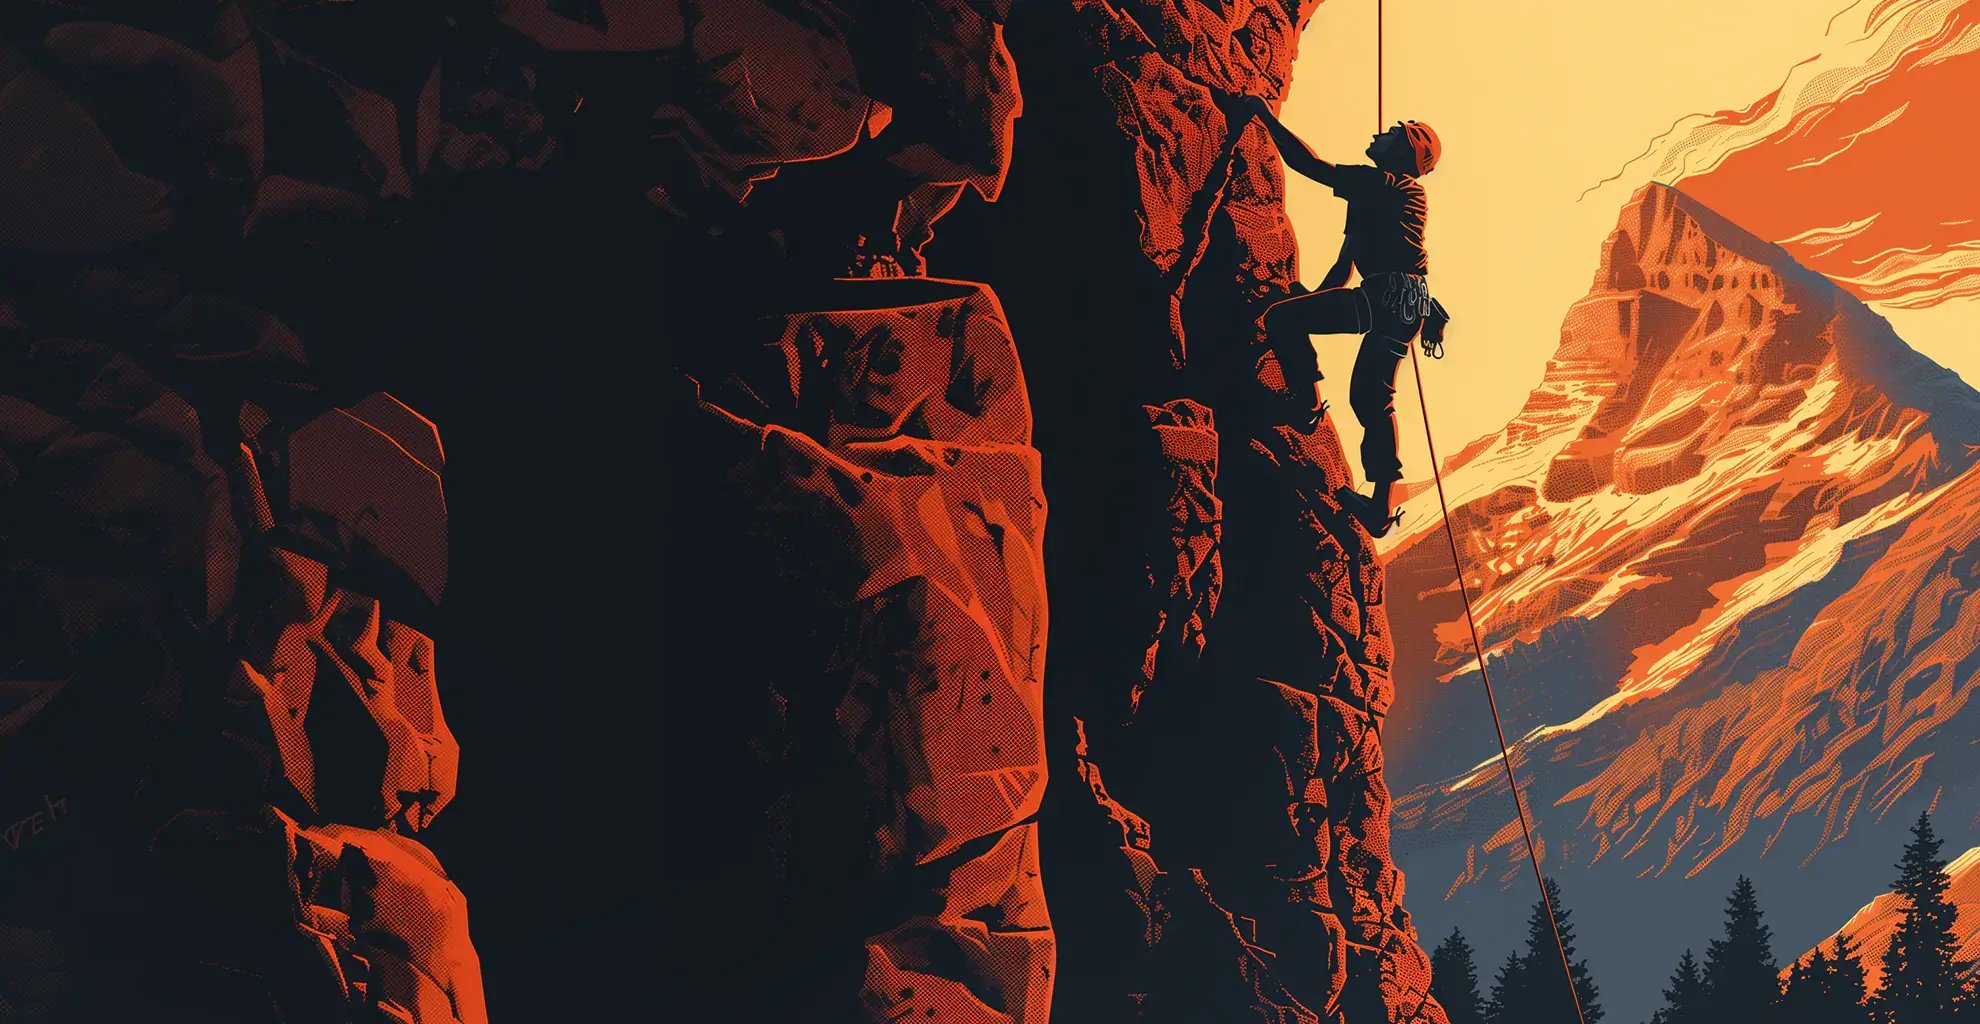 Альпинист поднимается по крутой скале в сумерках, на фоне яркого оранжево-красного неба, подчеркивающего гористую местность. 
Это представляет собой острые ощущения от решения новых задач, подобные динамичному и разнообразному опыту, который дают тренировки по боевым искусствам.